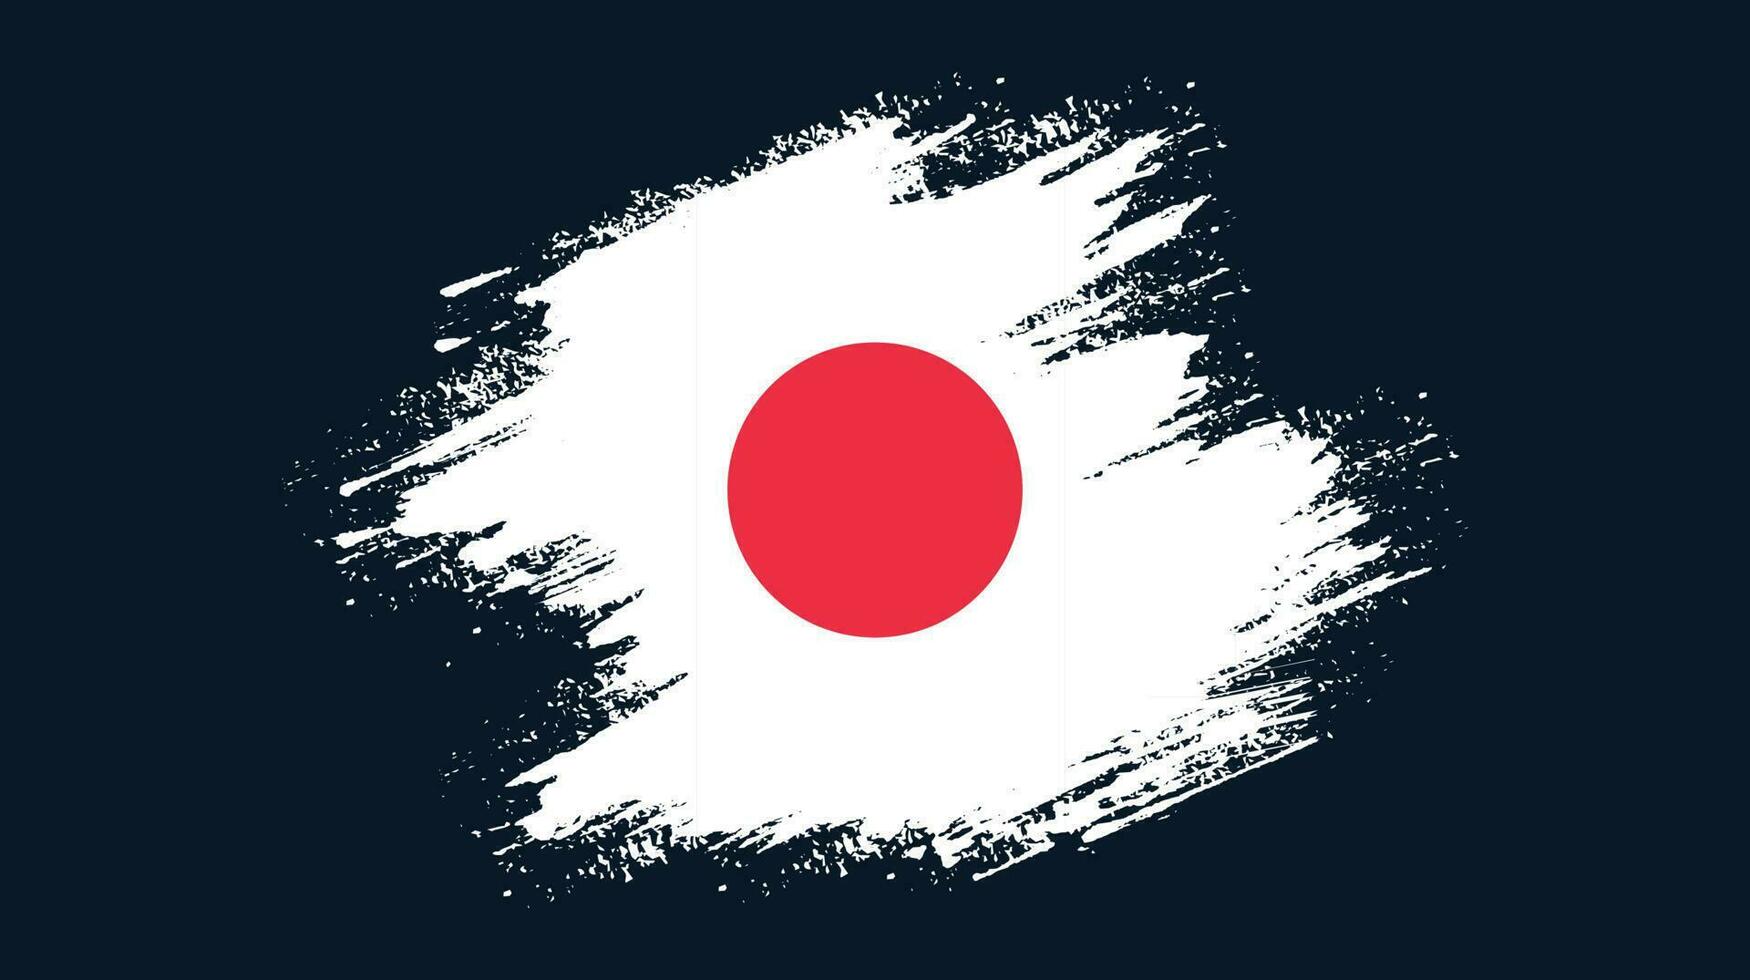 quadro de pincelada de tinta tinta vetor de bandeira do japão